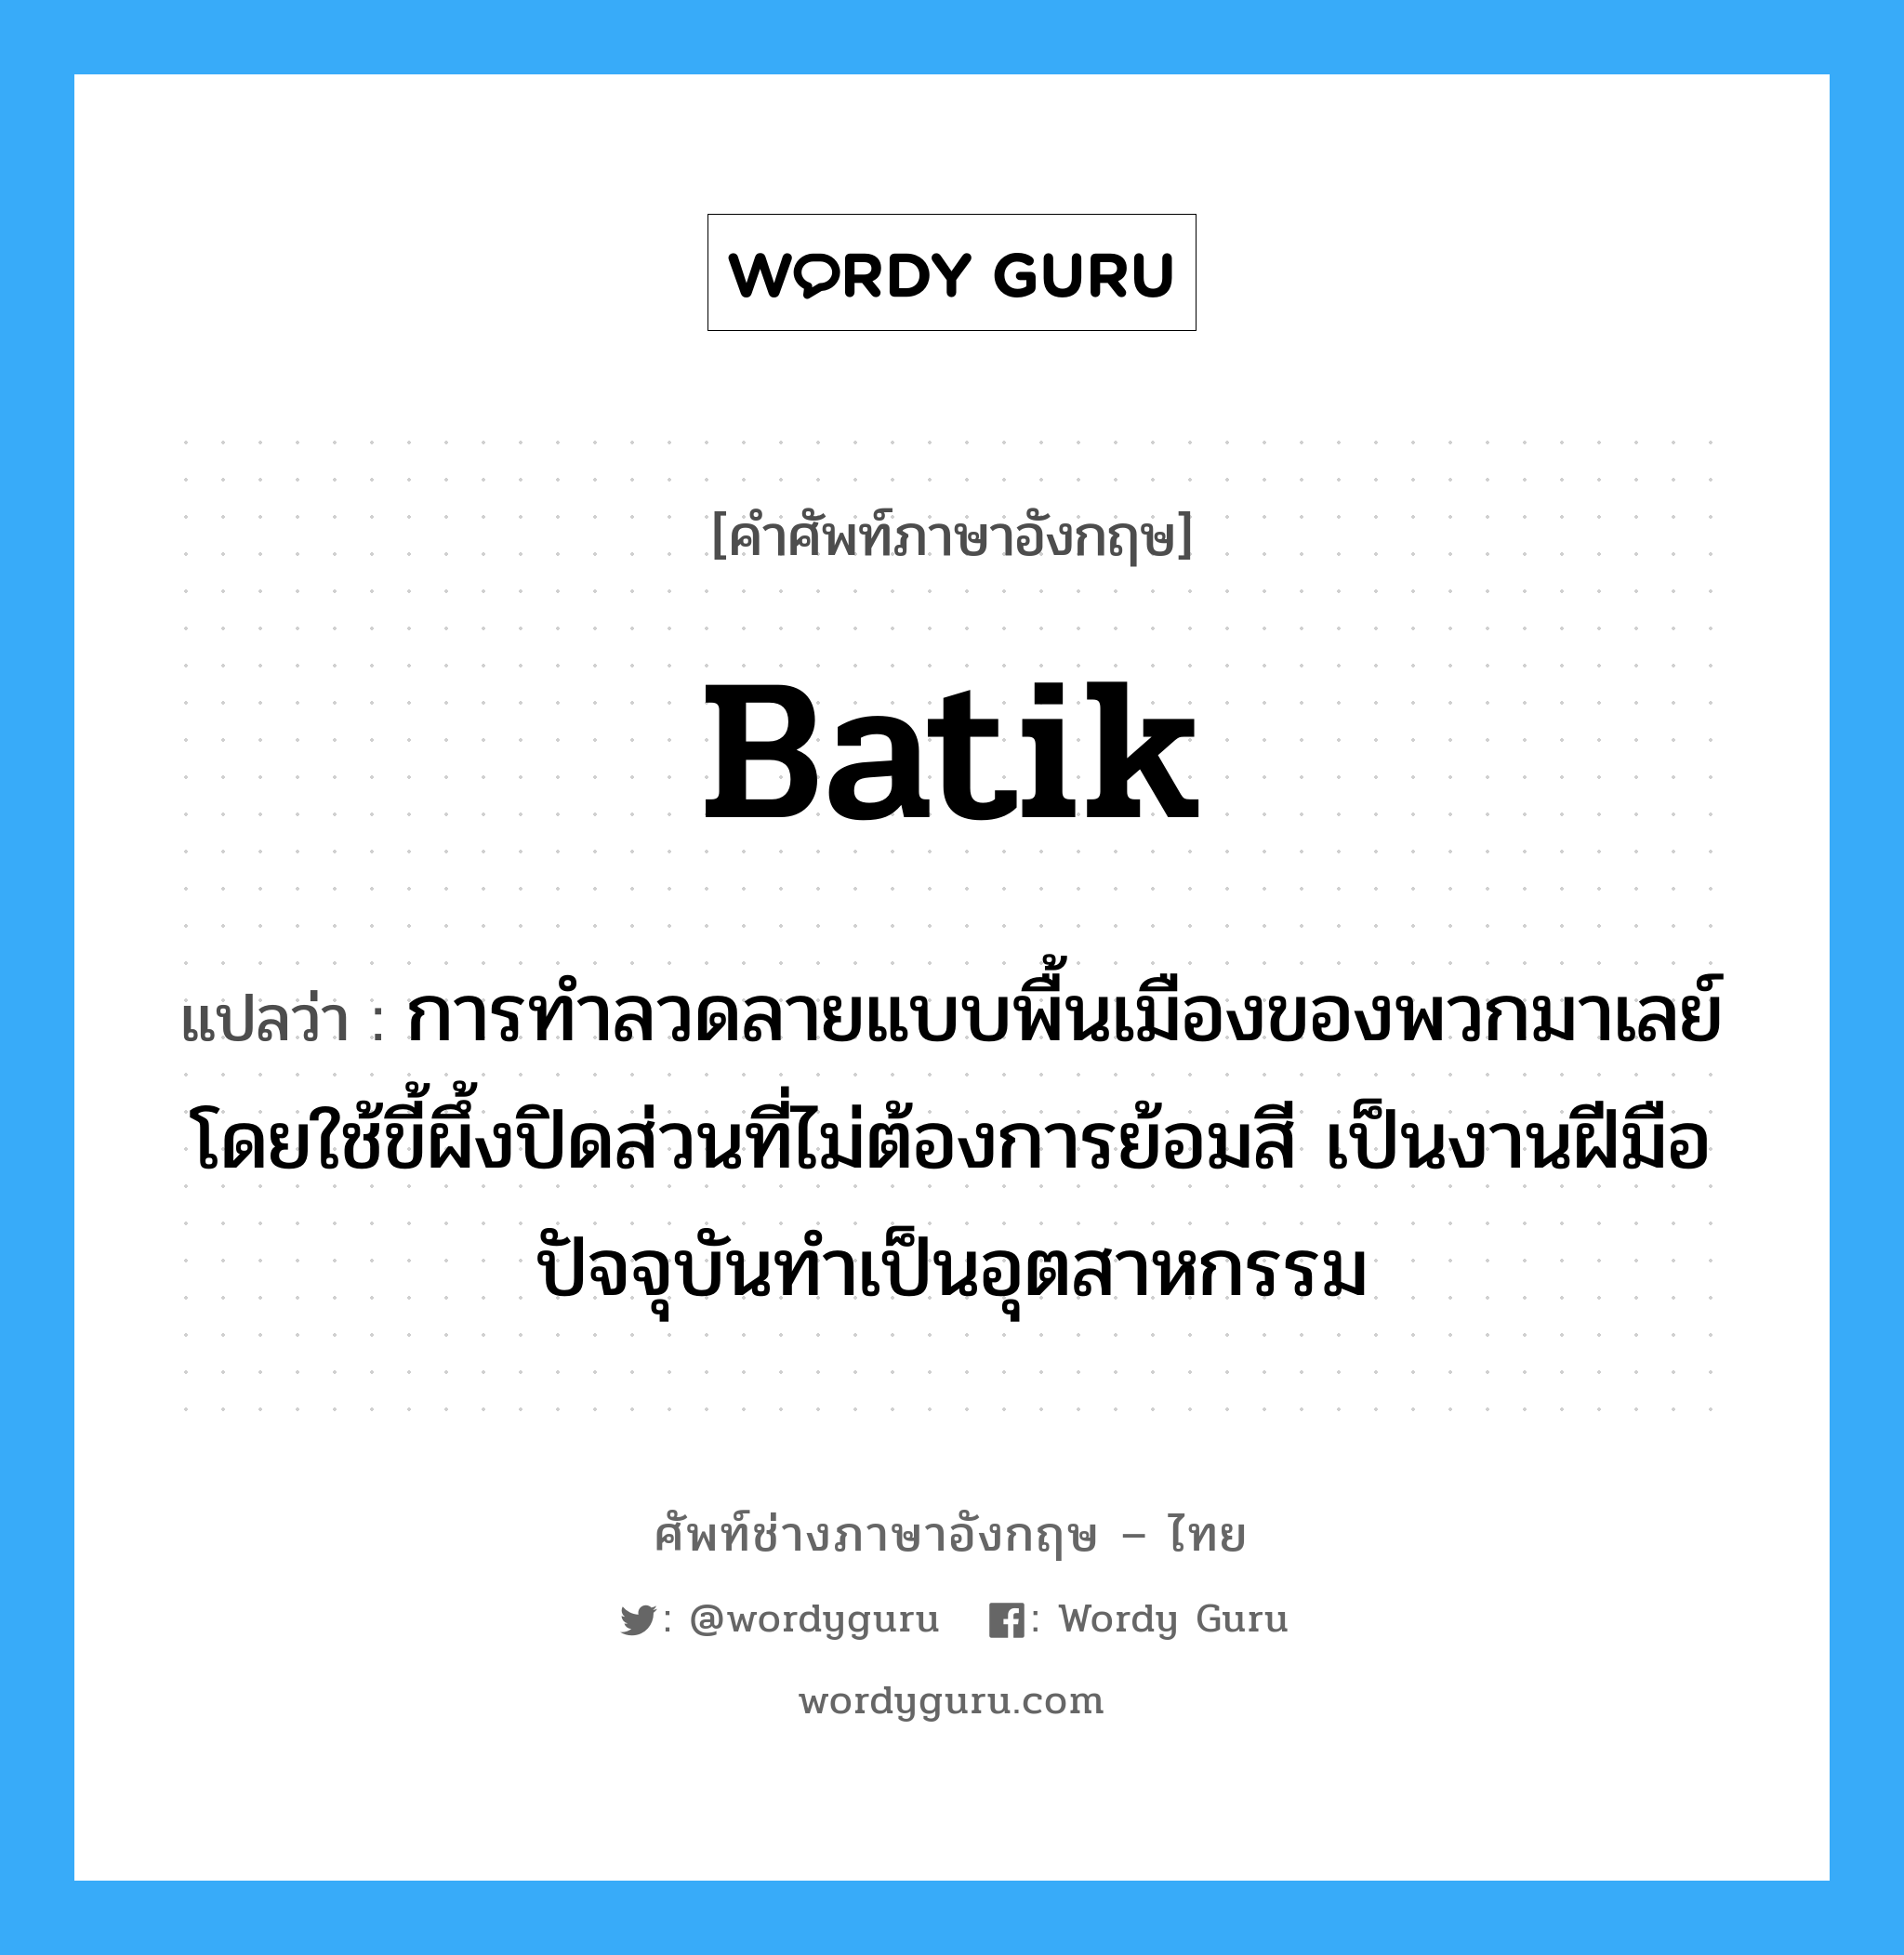 batik แปลว่า?, คำศัพท์ช่างภาษาอังกฤษ - ไทย batik คำศัพท์ภาษาอังกฤษ batik แปลว่า การทำลวดลายแบบพื้นเมืองของพวกมาเลย์โดยใช้ขี้ผึ้งปิดส่วนที่ไม่ต้องการย้อมสี เป็นงานฝีมือปัจจุบันทำเป็นอุตสาหกรรม